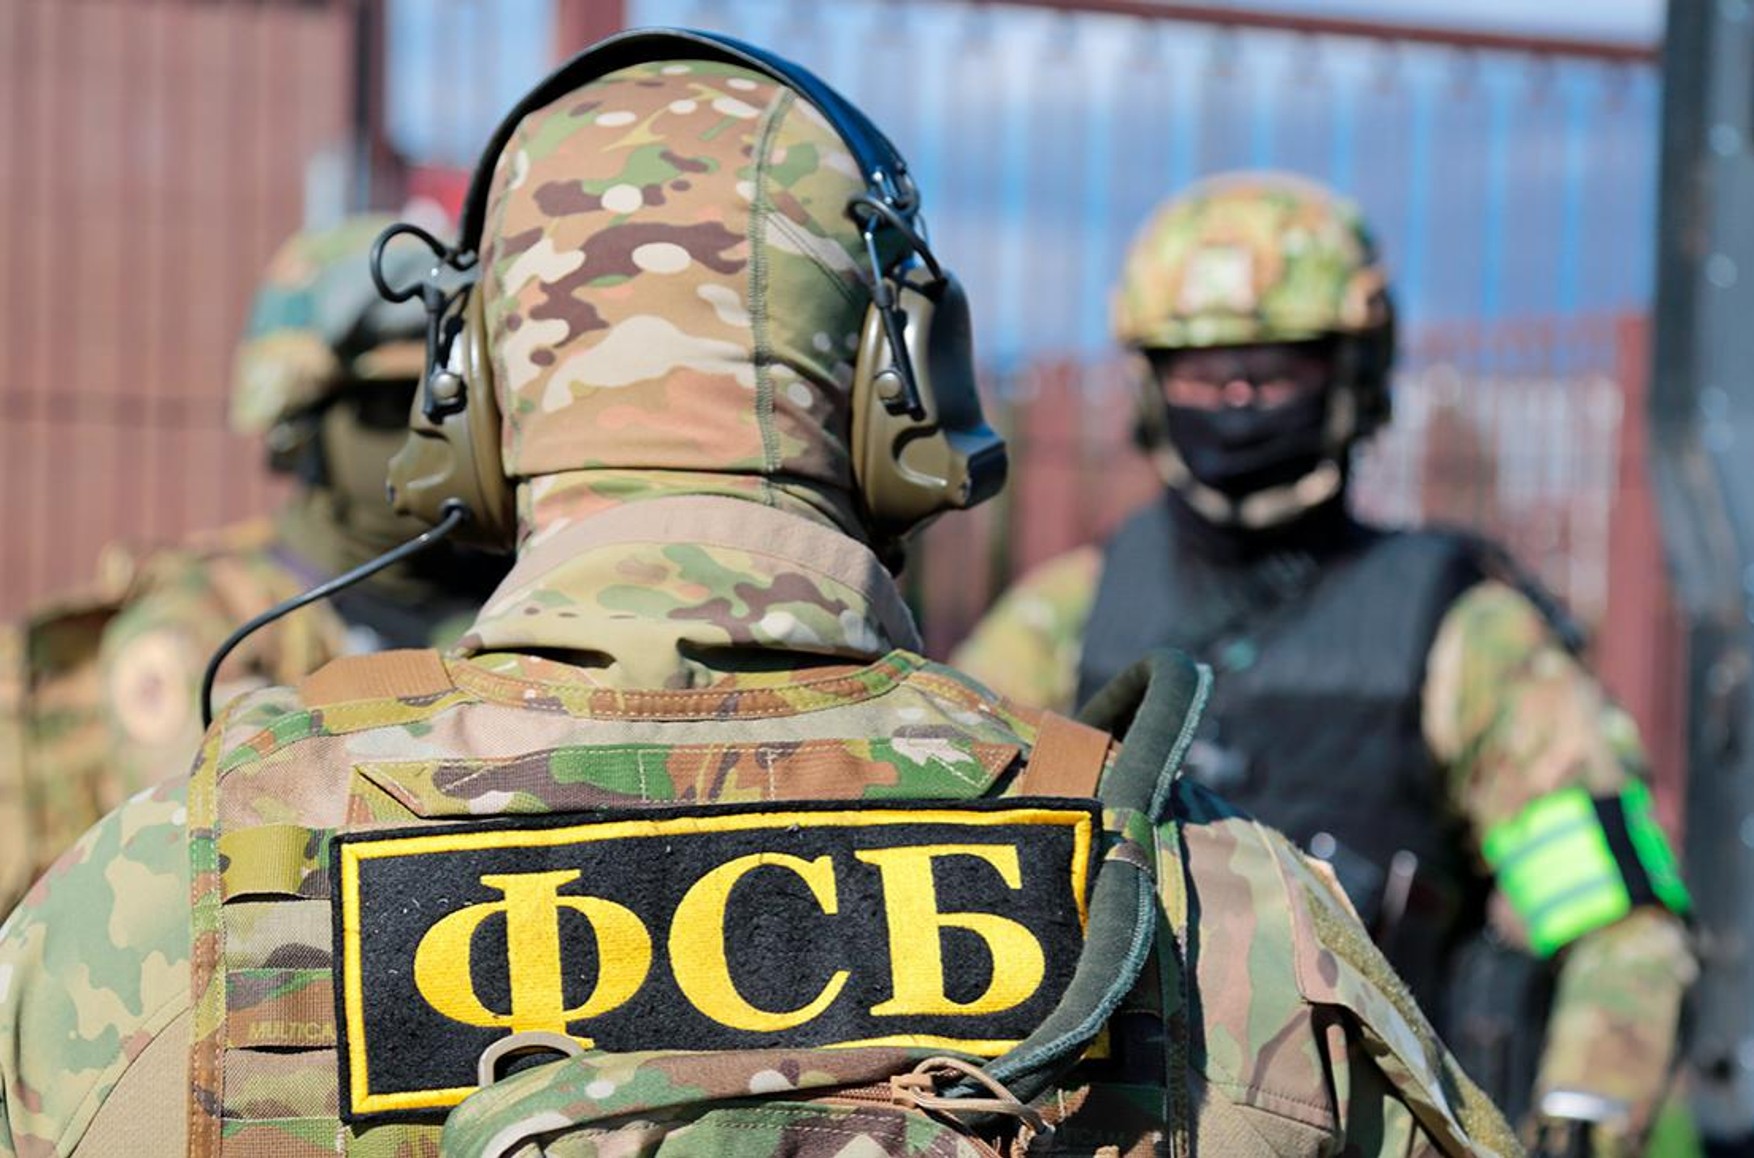 The Moscow Times: Убитые ФСБ «украинские террористы» оказались фанатами компьютерной игры из Воронежа